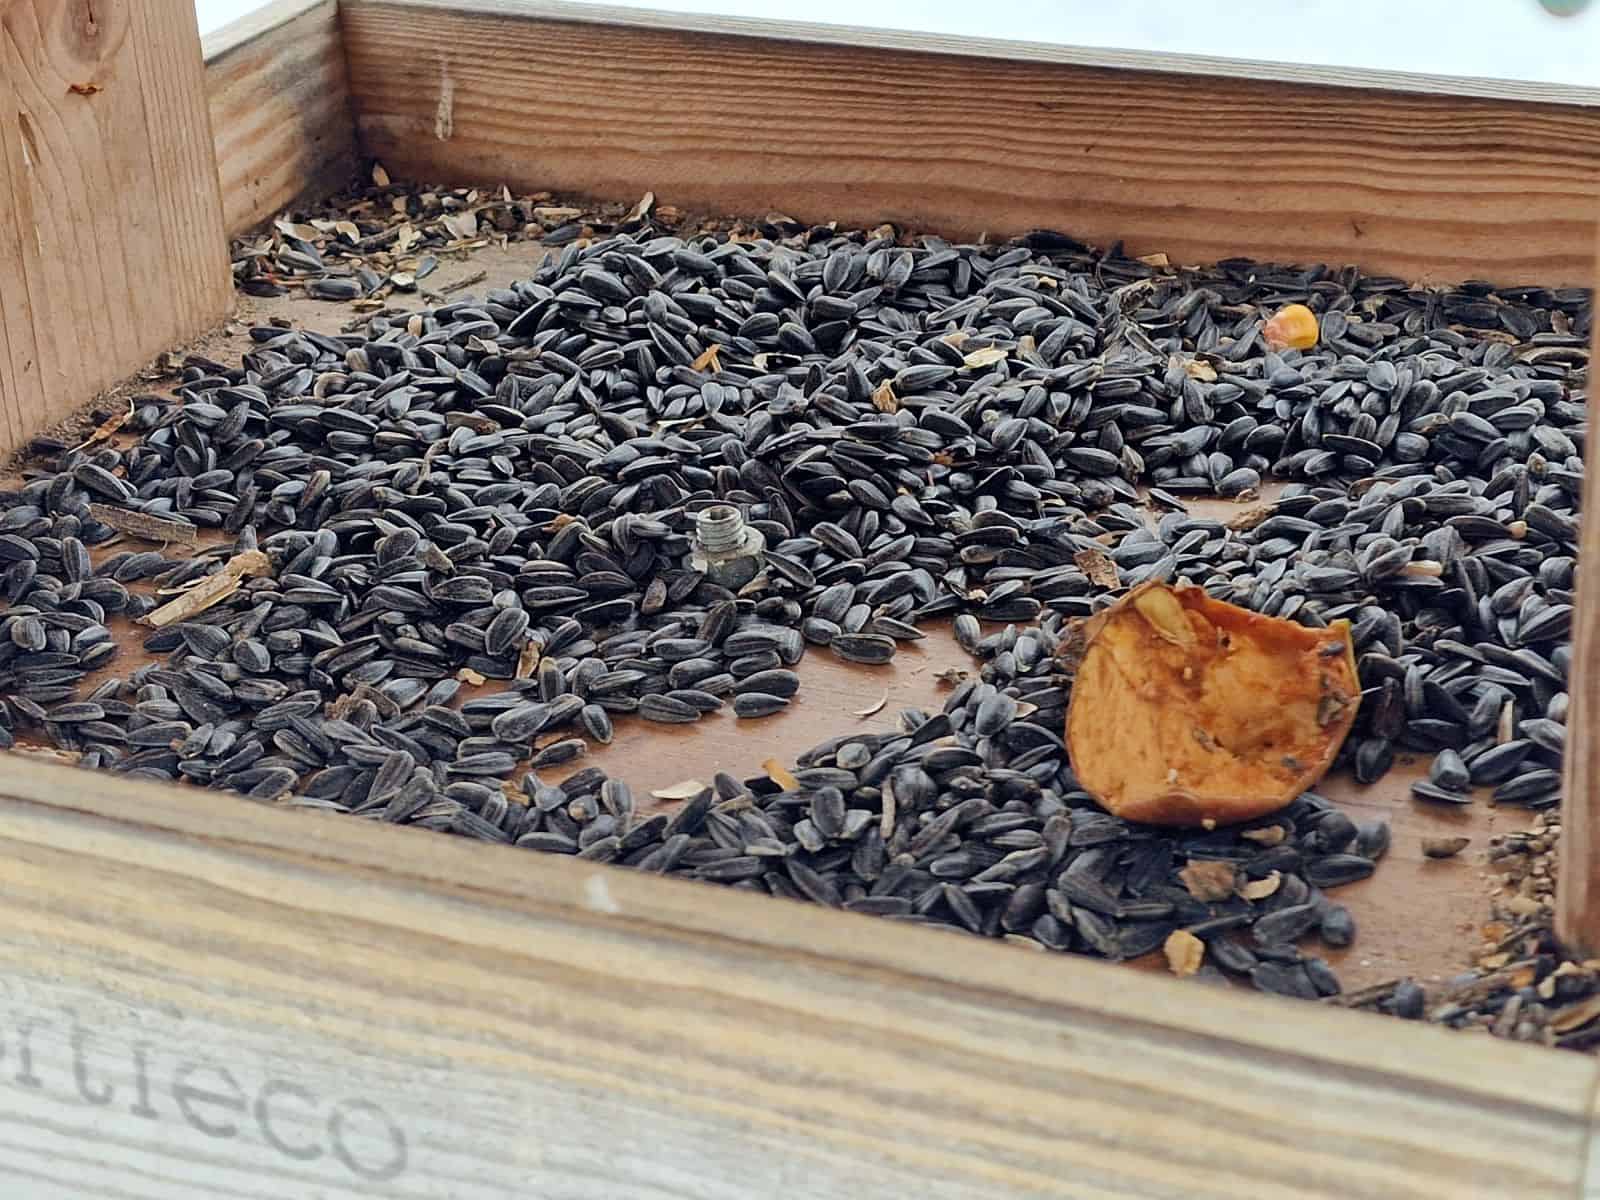 muzeele din sibiu oferă o alternativă sănătoasă pentru hrana păsărilor - specialist: "pâinea nu este un aliment indicat"